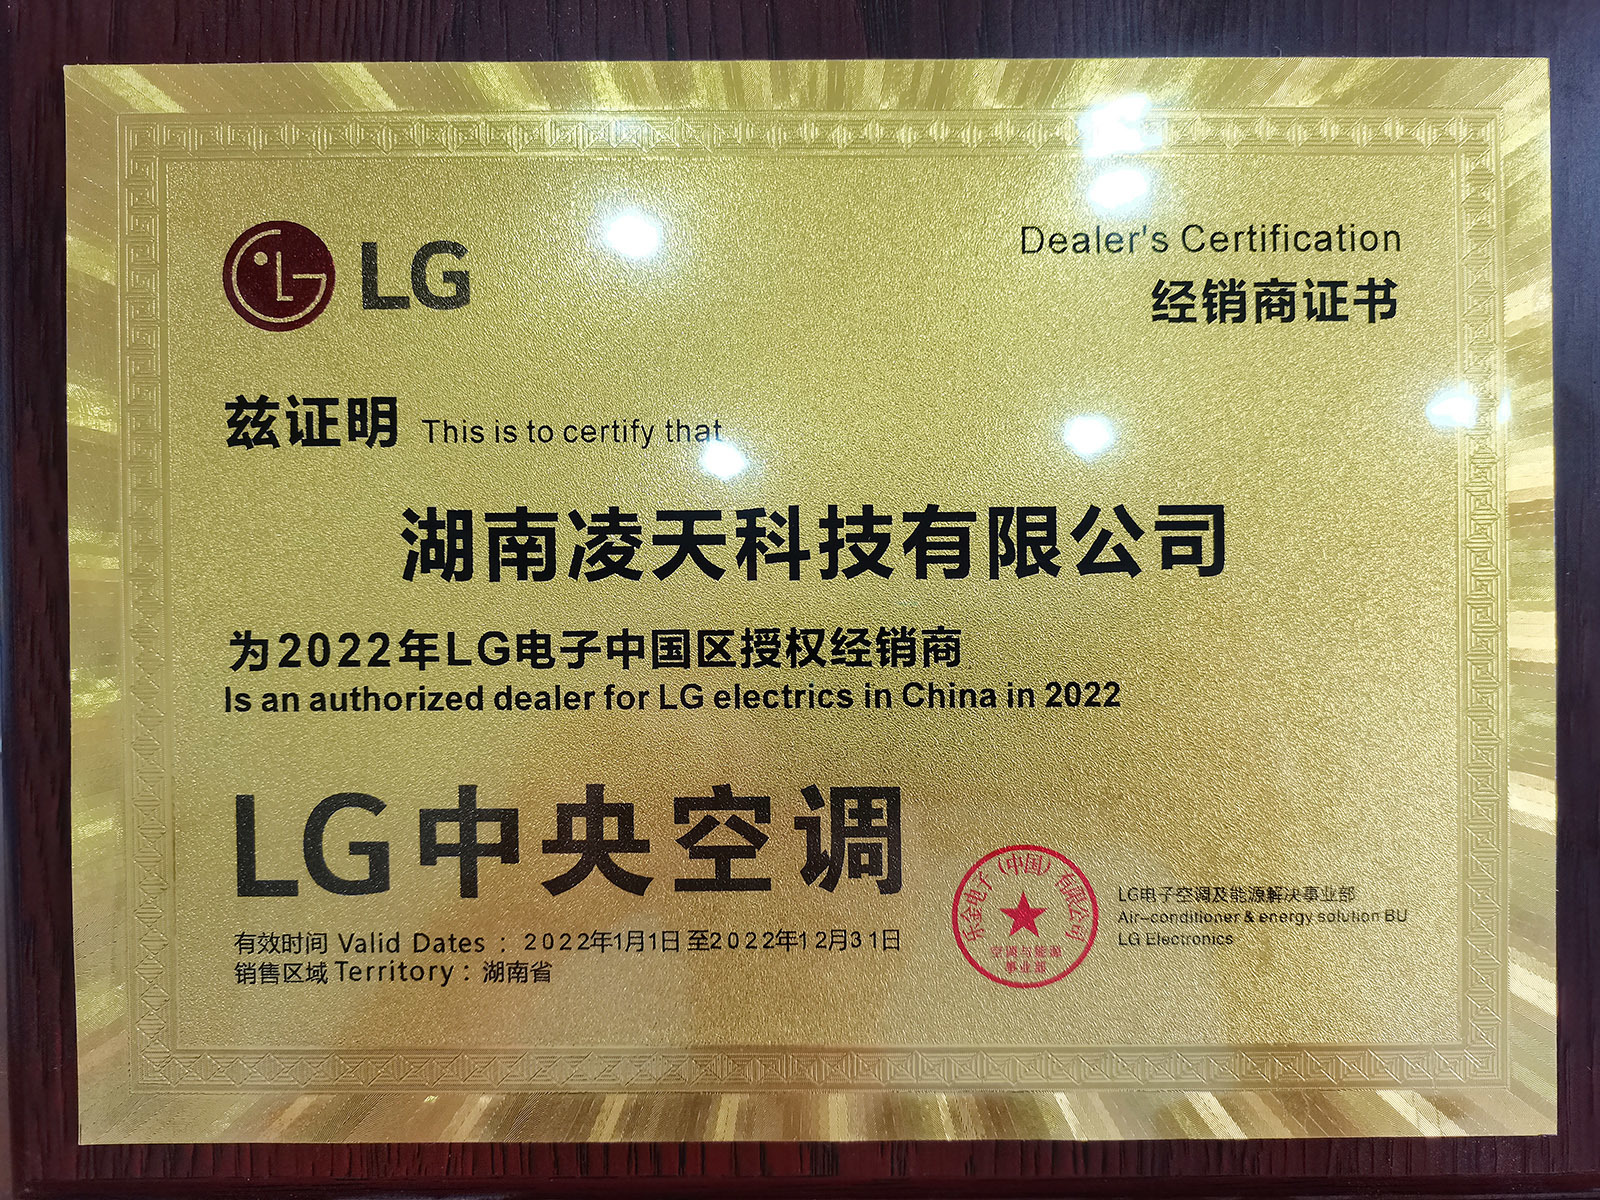 LG电子中央空调中国区授权核心经销商